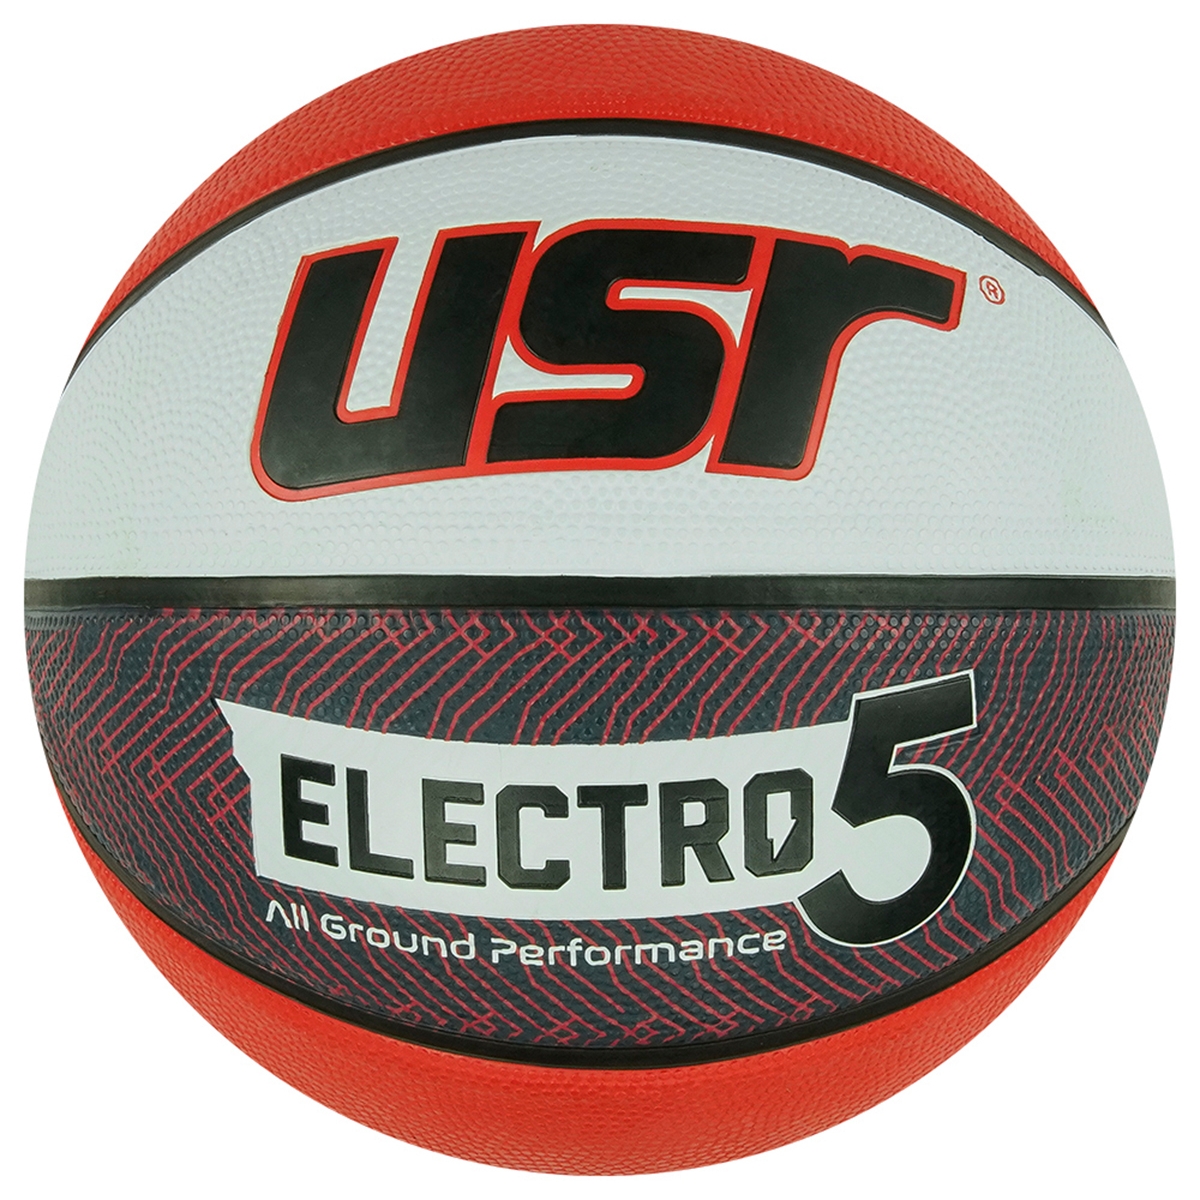 Electro5.2 Kauçuk 5 No Basketbol Topu